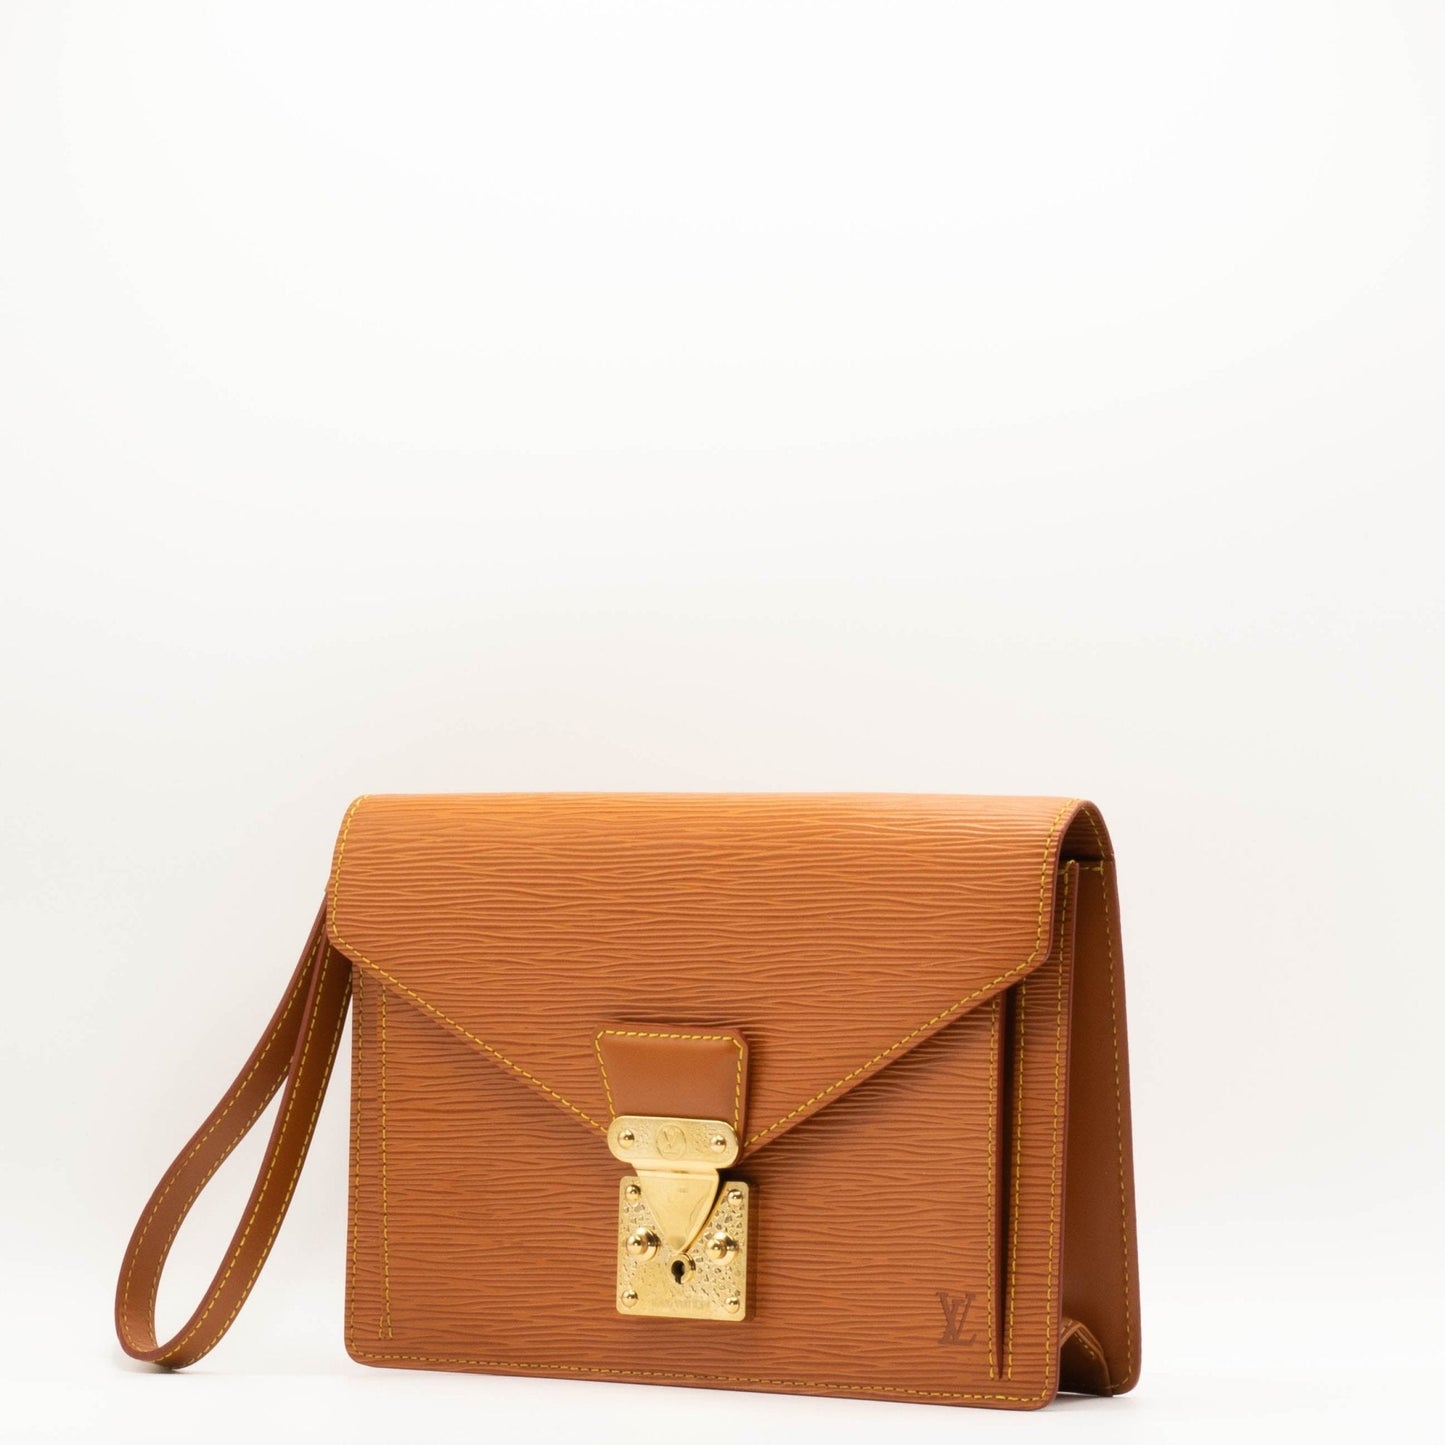 Louis Vuitton Epi Serie Dragonne clutch bag / second bag cuero